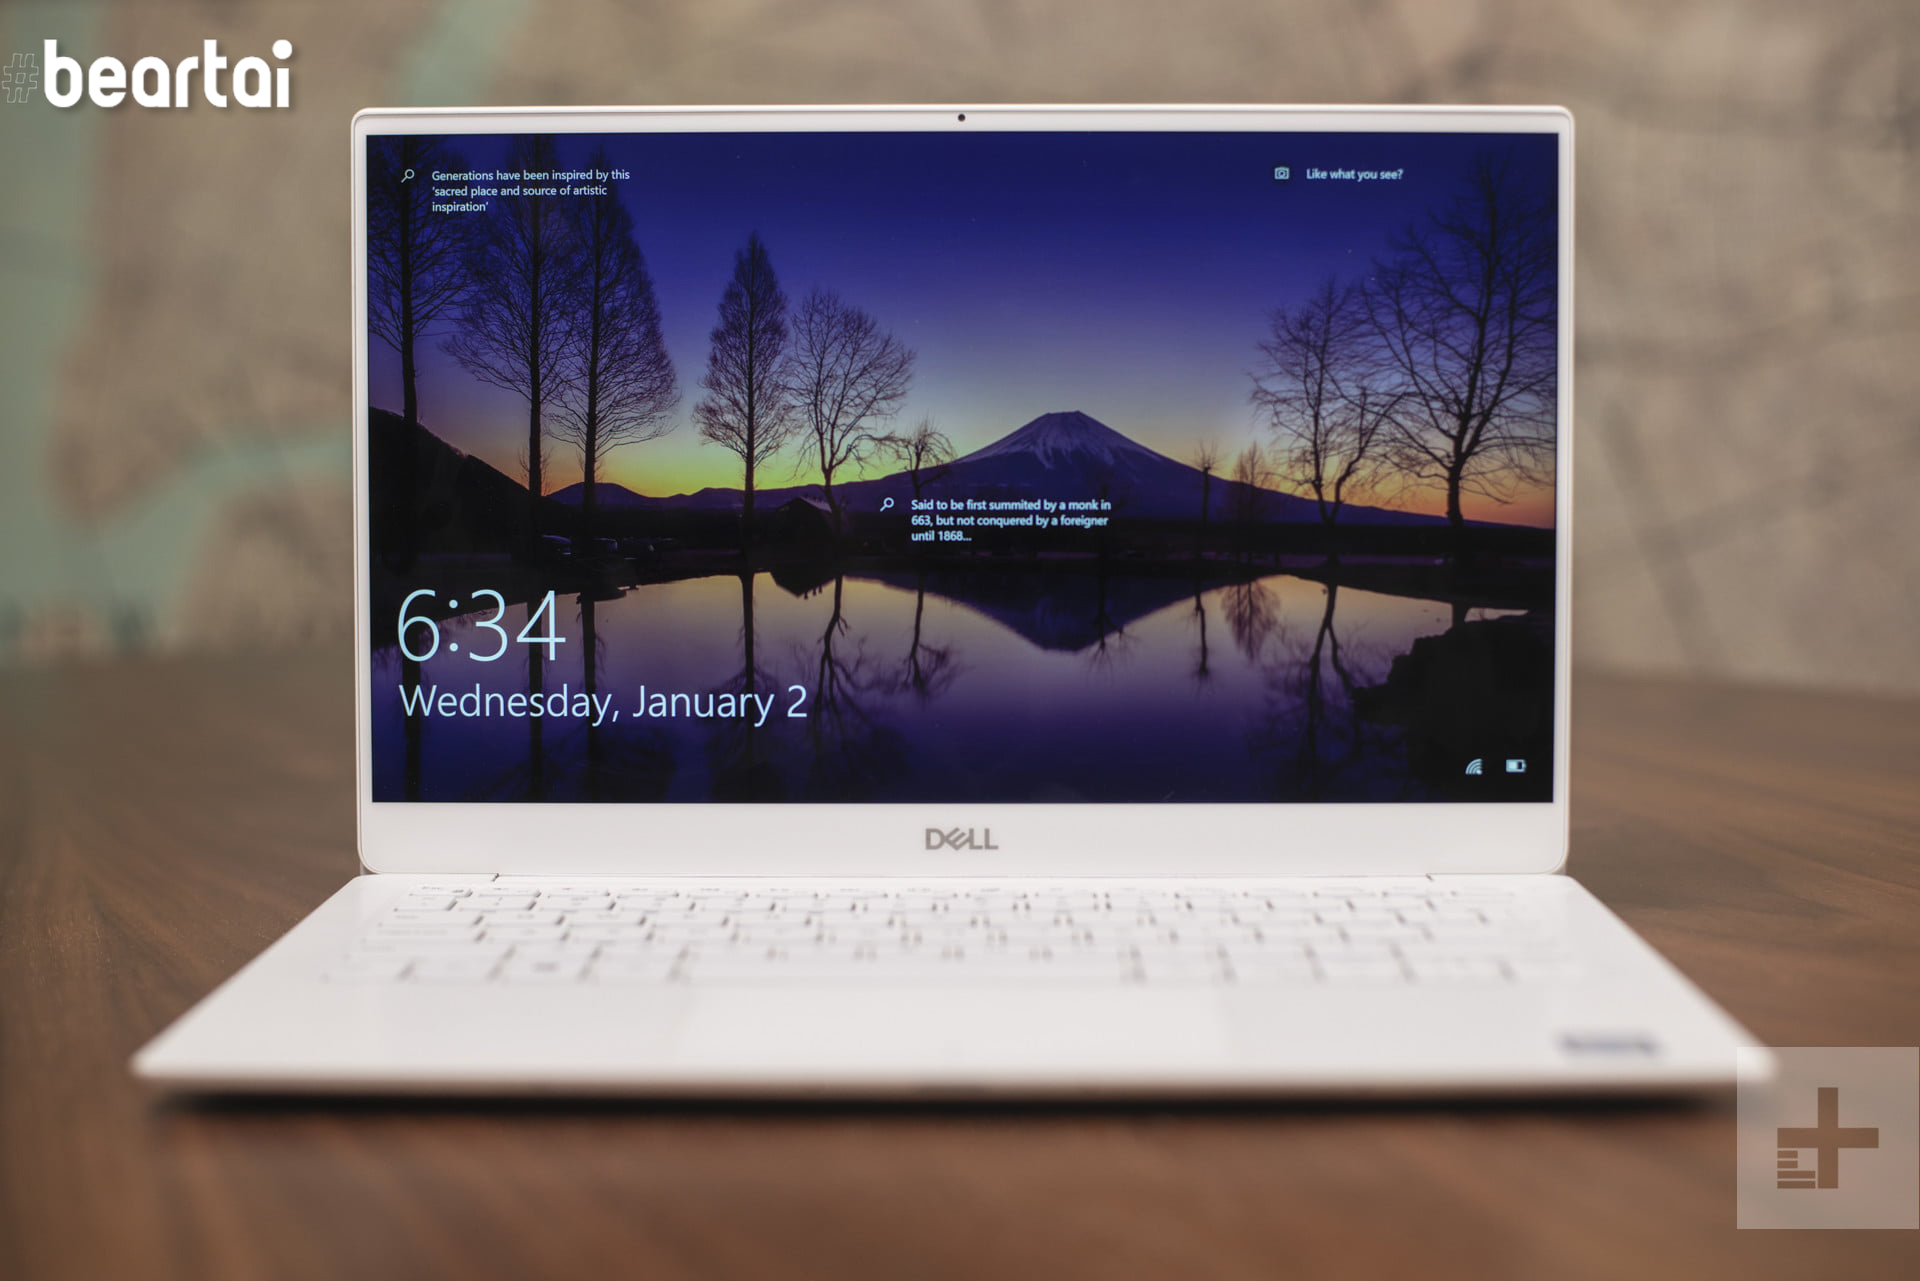 วางขายแล้ว แล็ปท็อป Dell New XPS 13 (2019) หน้าจอ 13 นิ้ว หน่วยประมวลผล 6 Cores